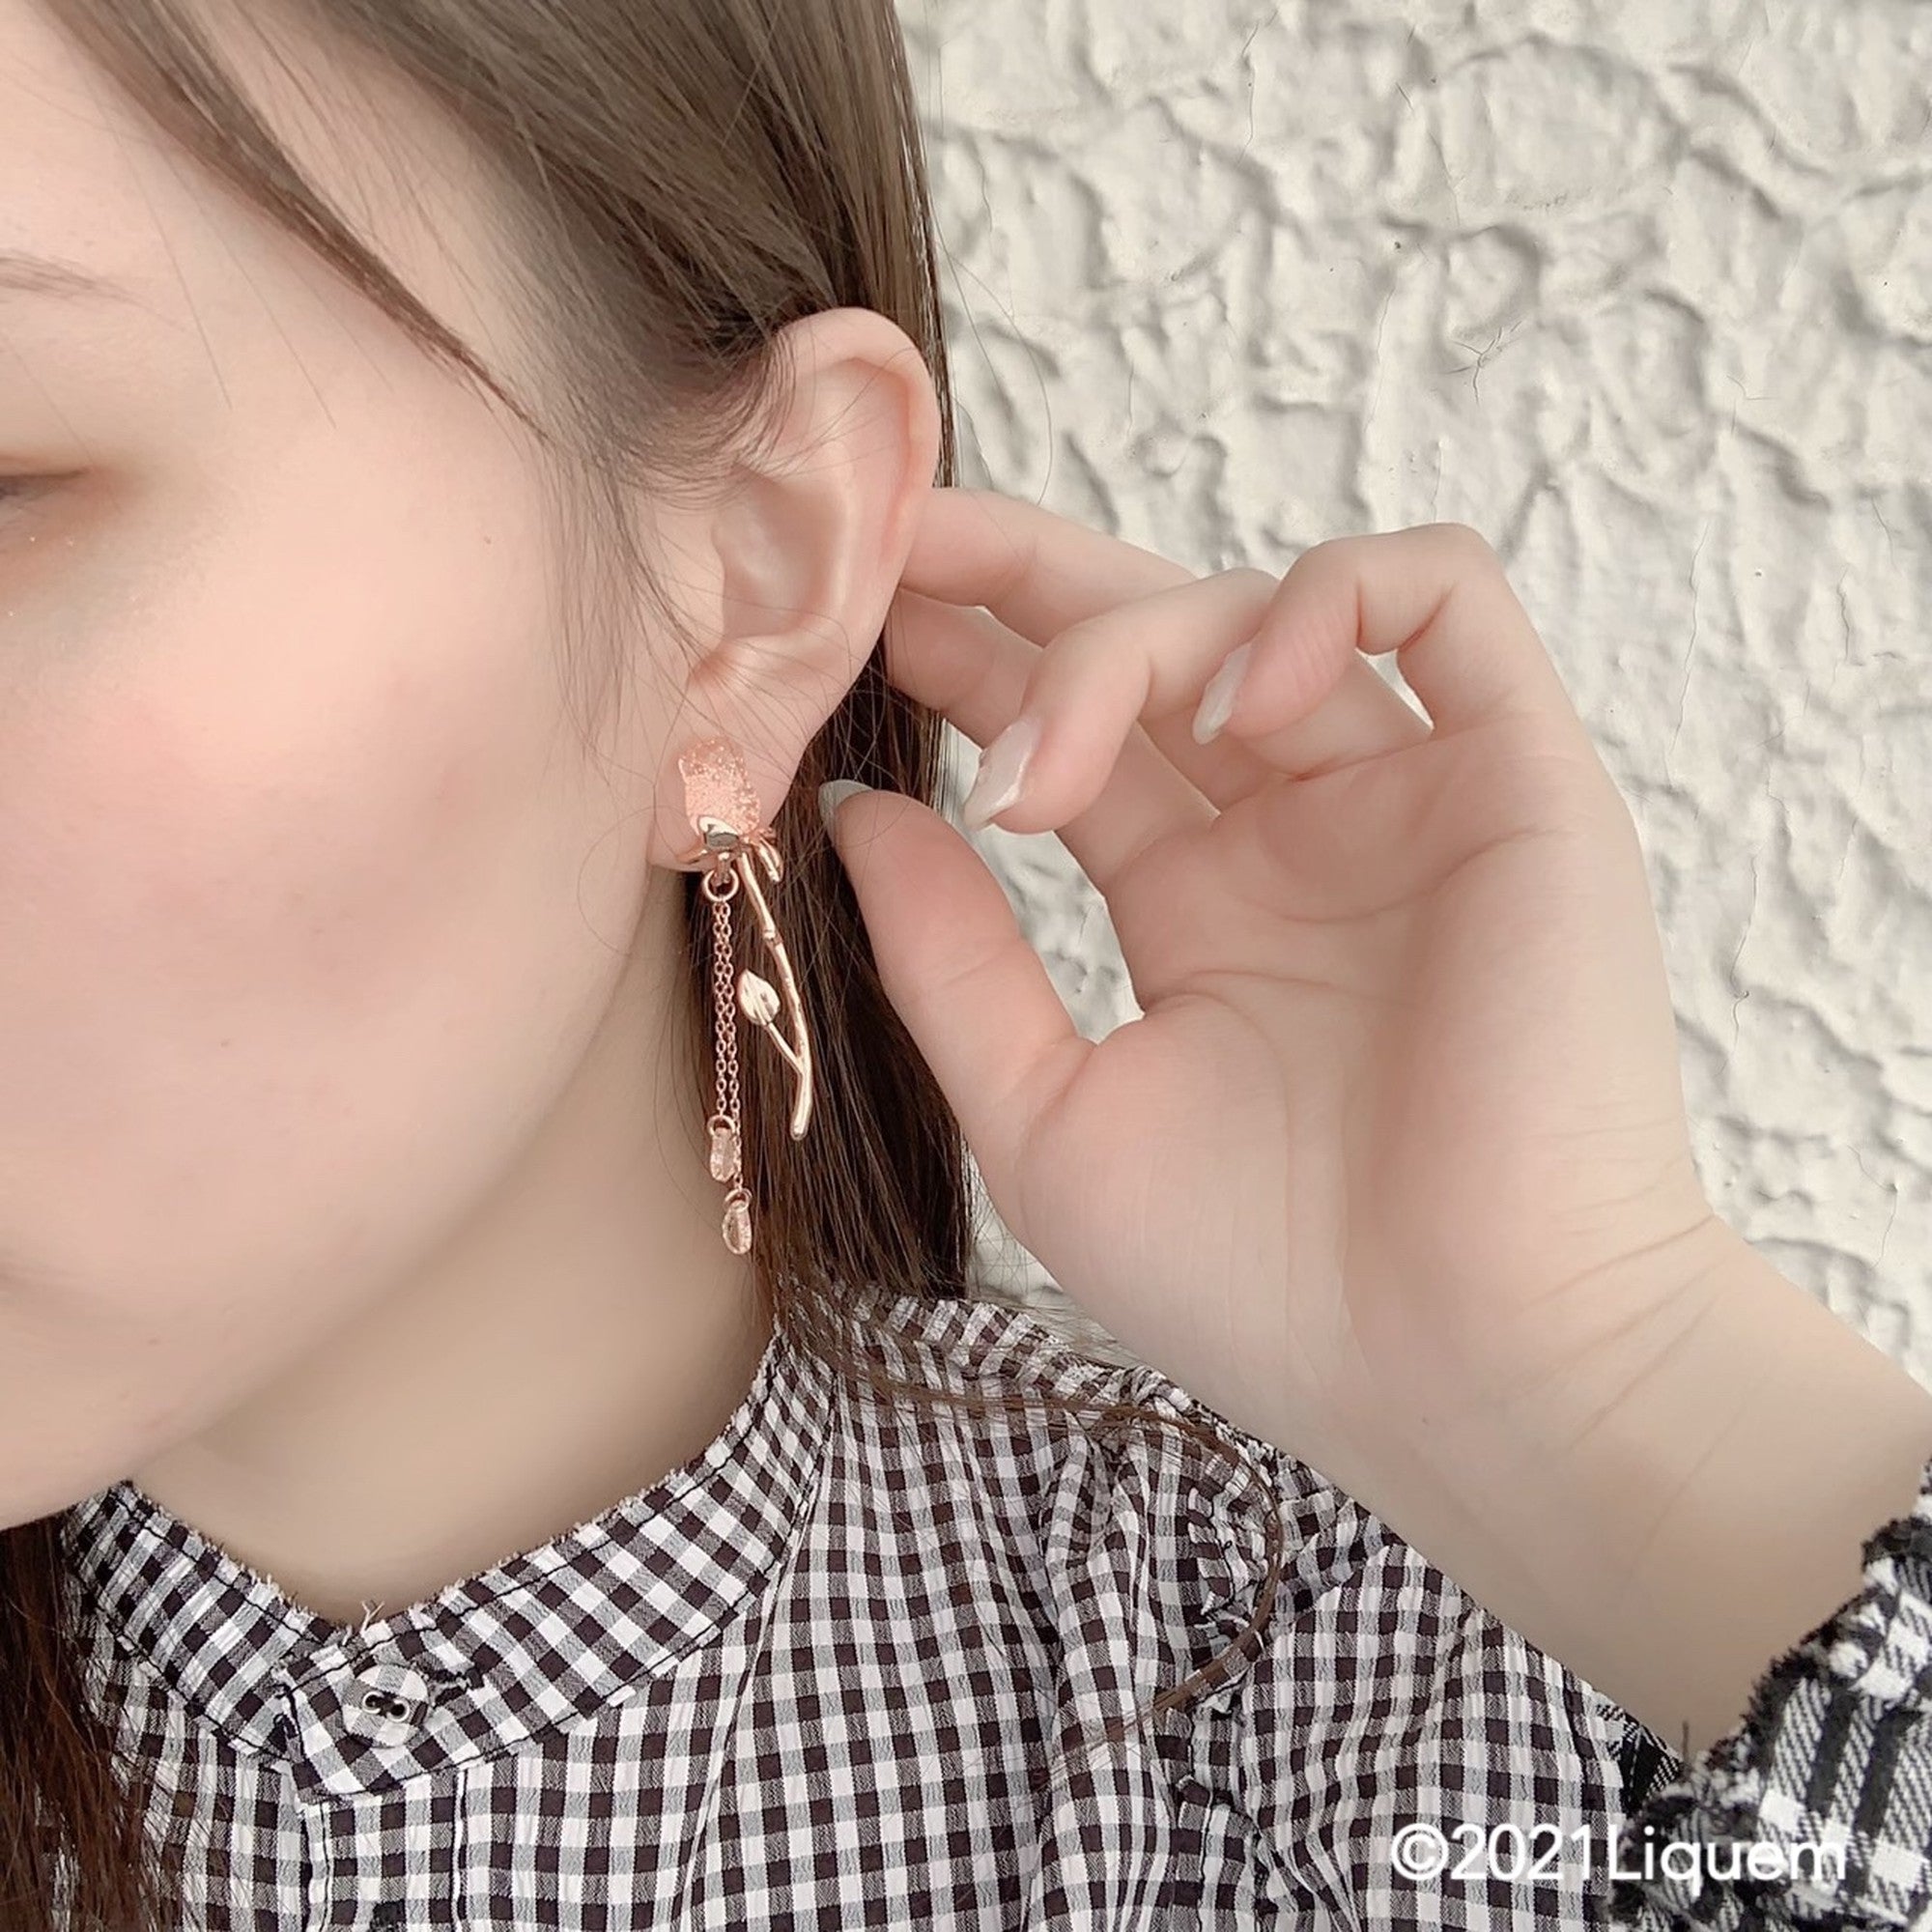 YUKI × Liquem / Lady Rose clip on earrings (PK lame)